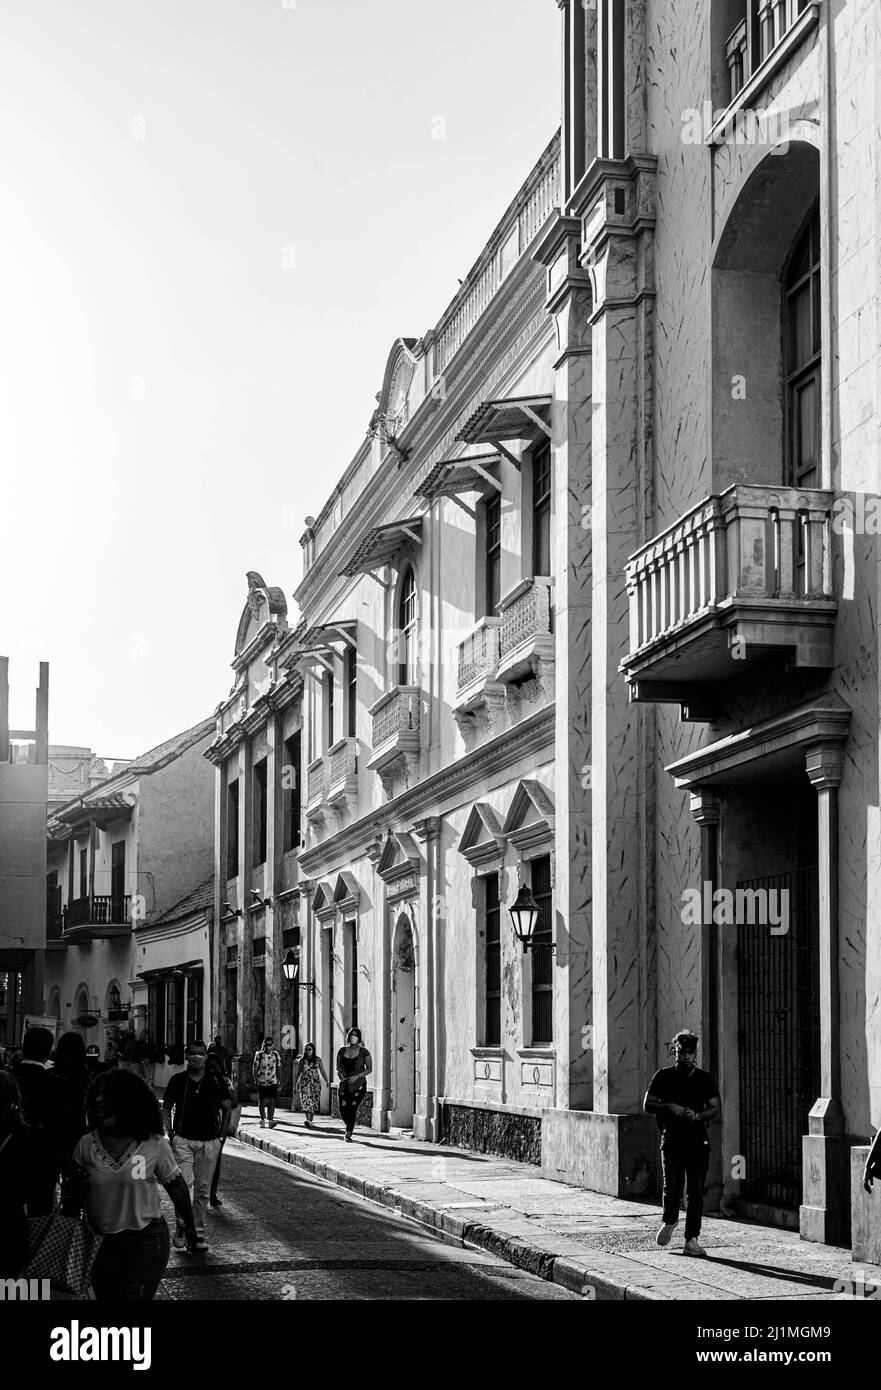 Escena callejera en el centro histórico de la ciudad, Cartagena de Indias, Colombia. Foto de stock